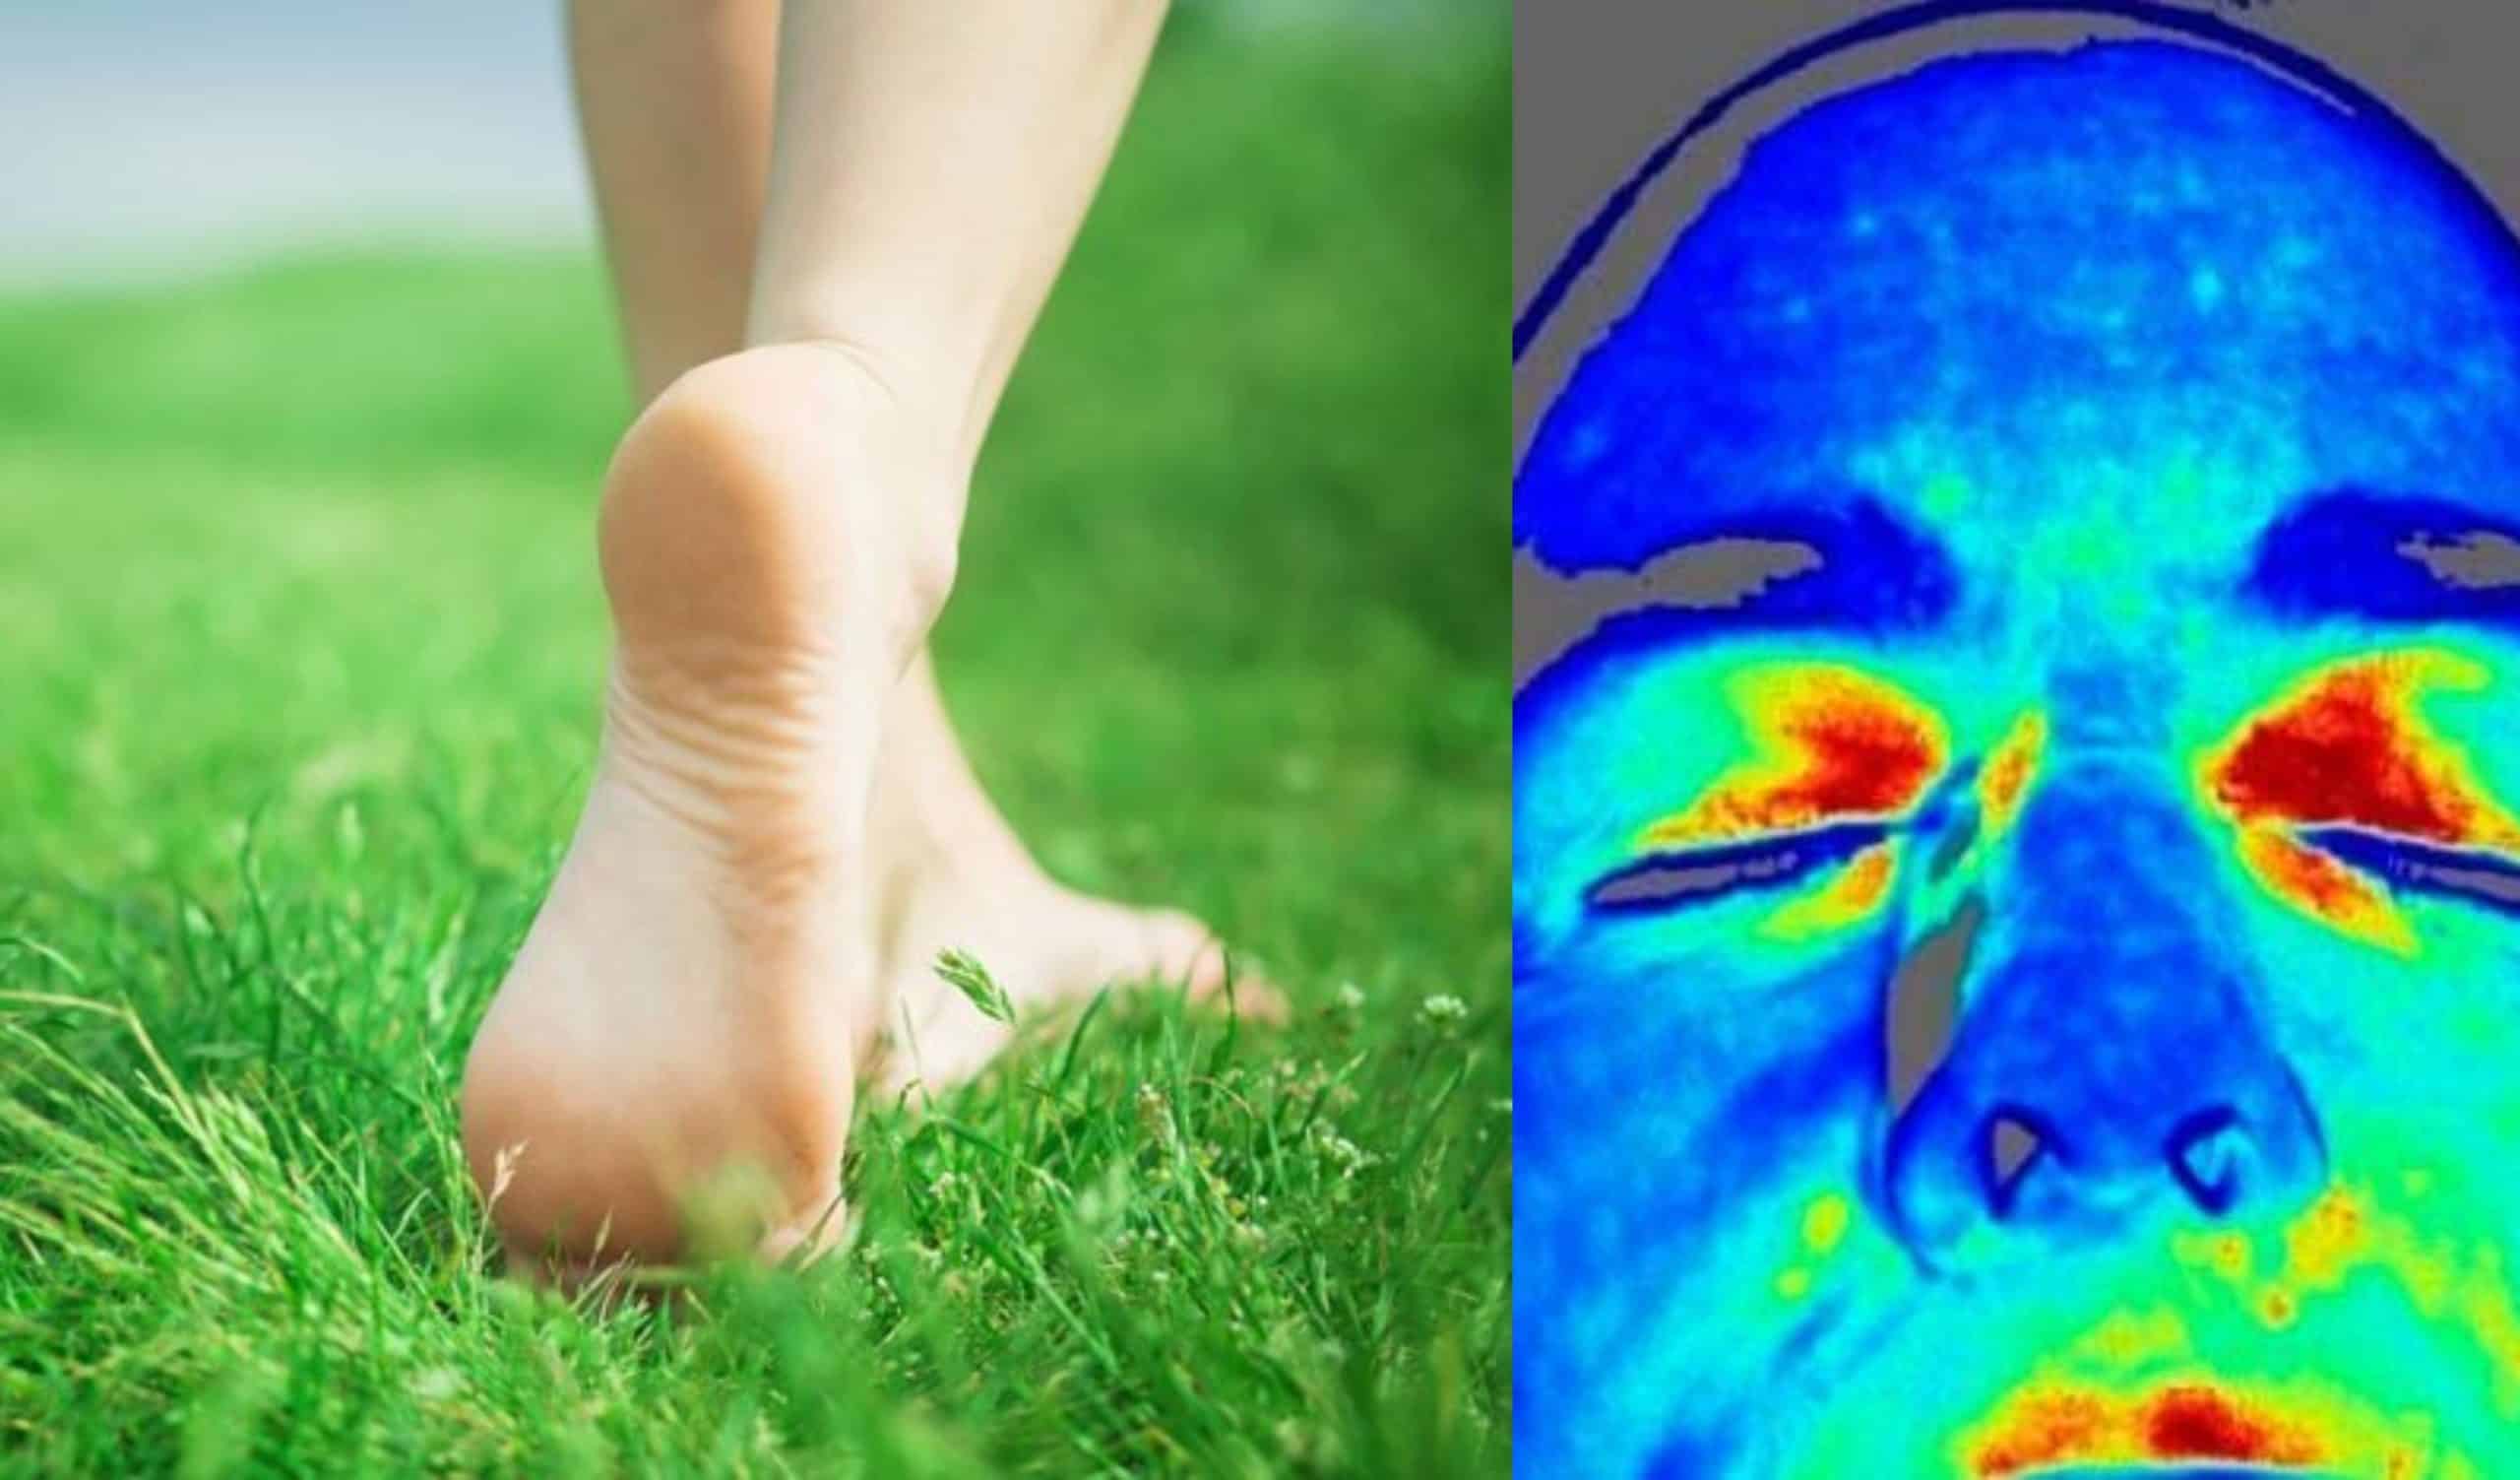 Caminar descalzos, Científicos demuestran lo que sucede en el cuerpo al caminar descalzos